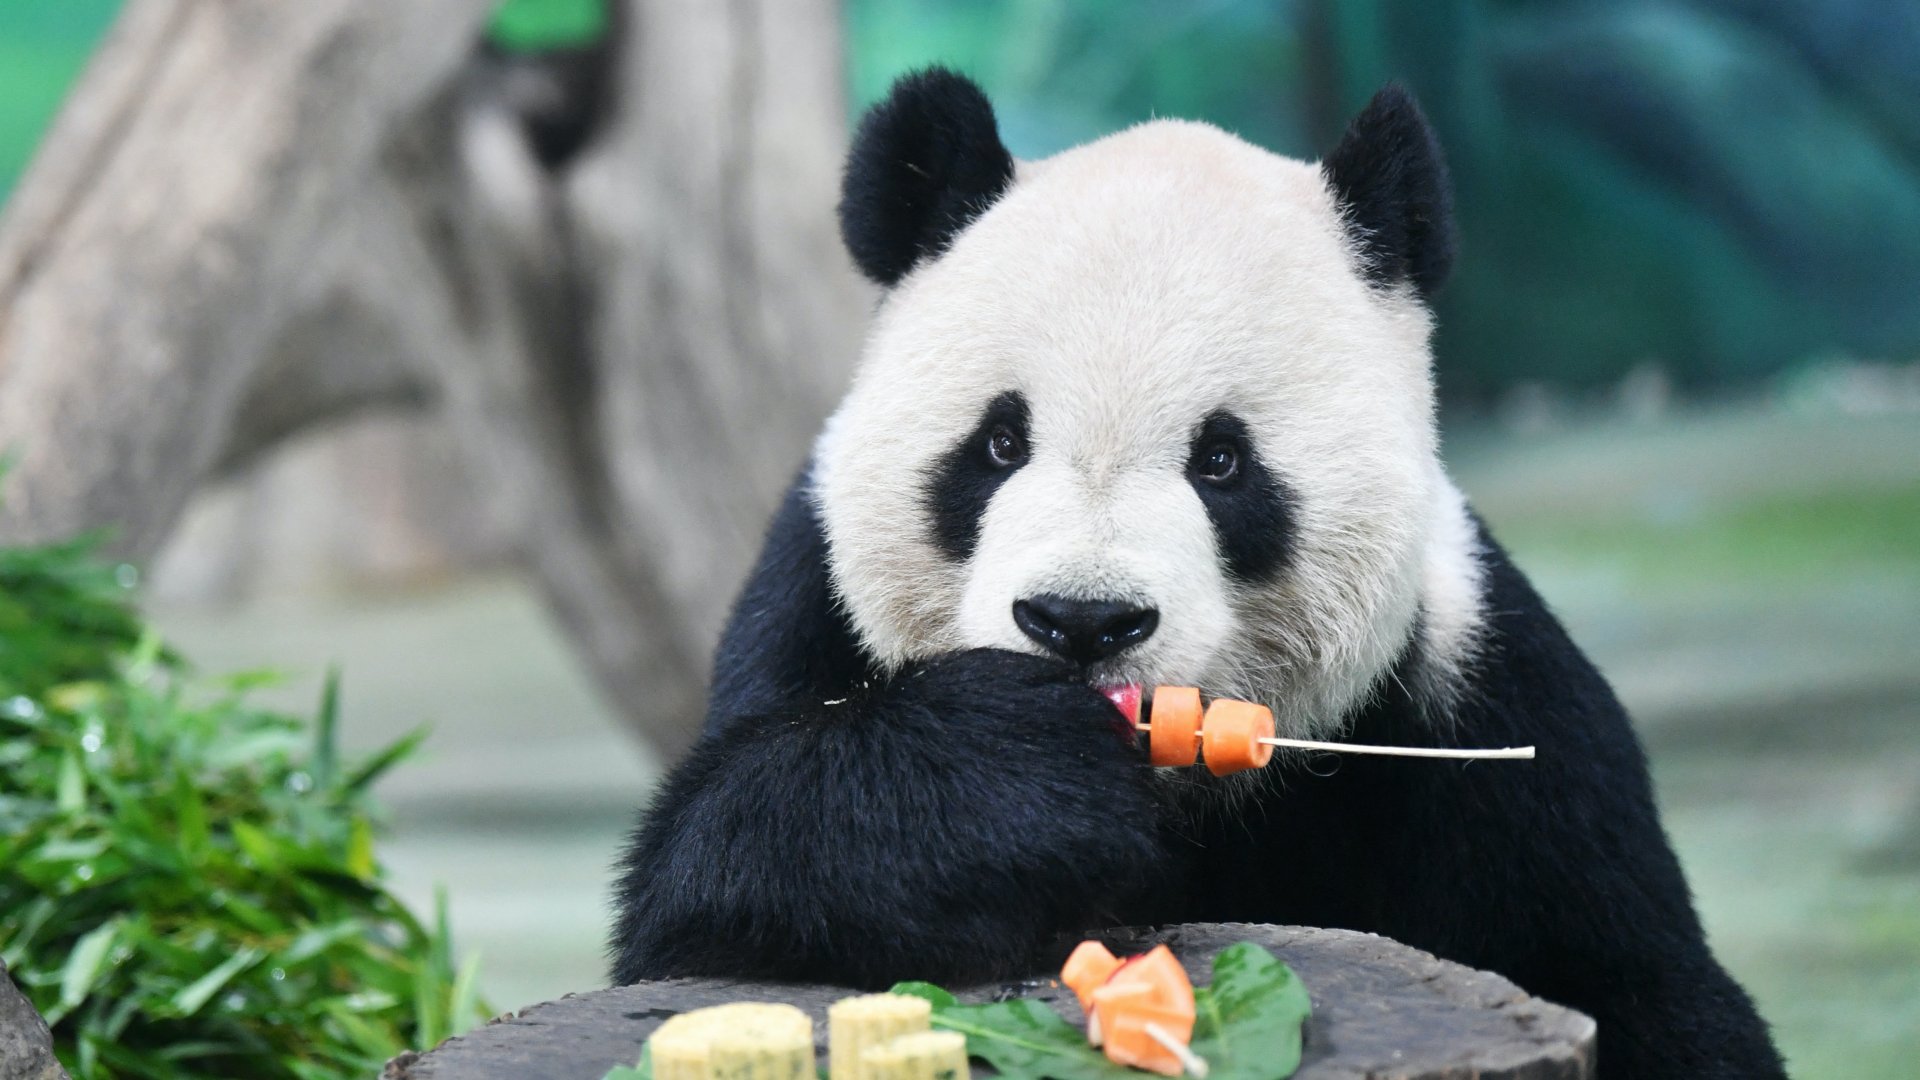 Az óriáspanda Tuan Tuan nyársra tűzött gyümölcsöket és zöldségeket eszik Tajpejben, a tajvani állatkertben 2019. szeptember 13-án